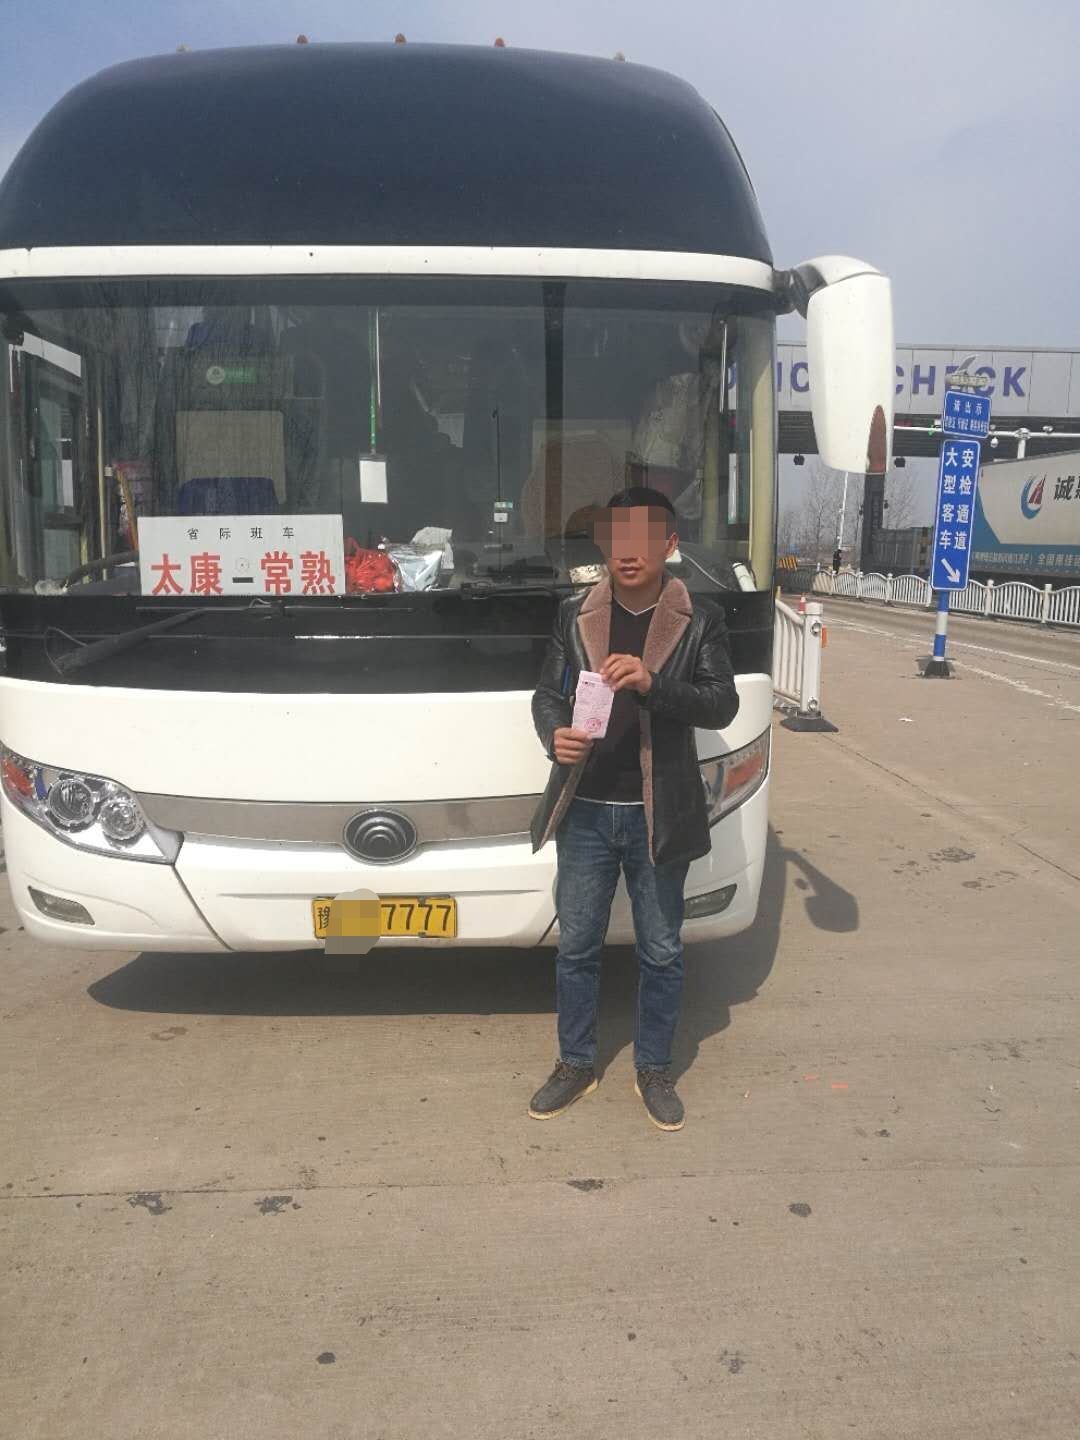 河南开往深圳大巴车抛锚 55人被困高速后转车离开 - 雪花新闻